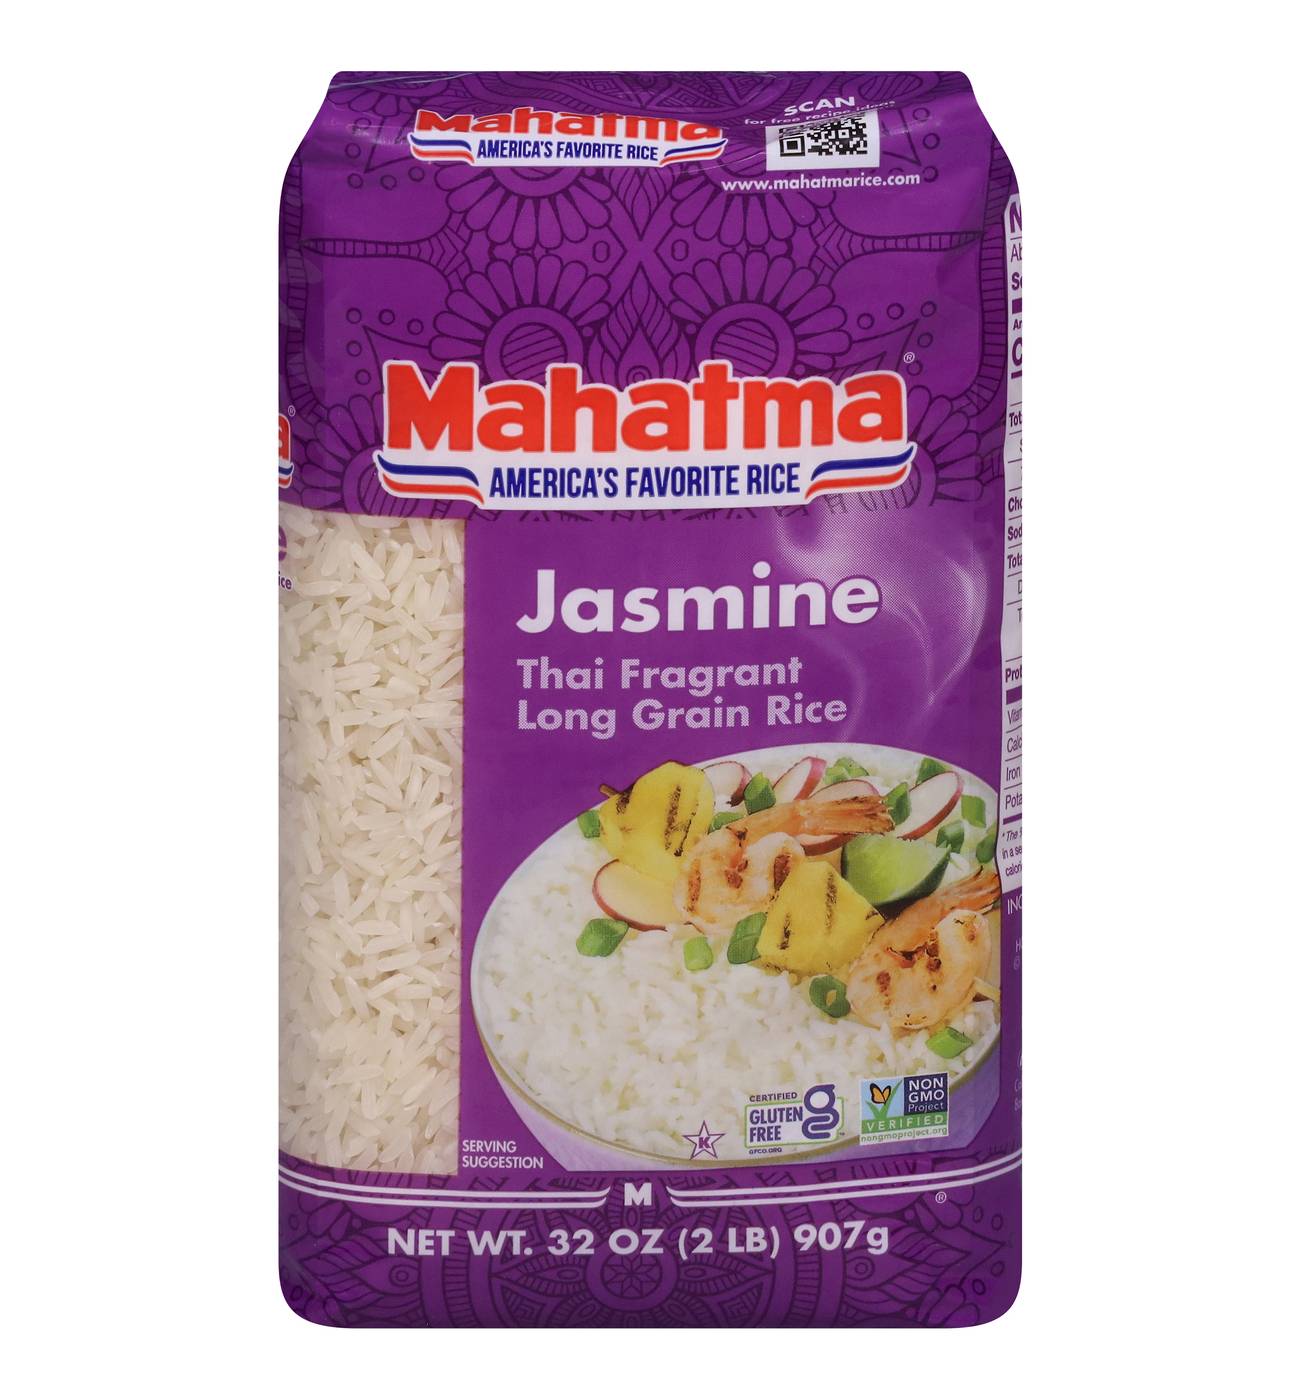 Mahatma Jasmine Rice; image 1 of 2